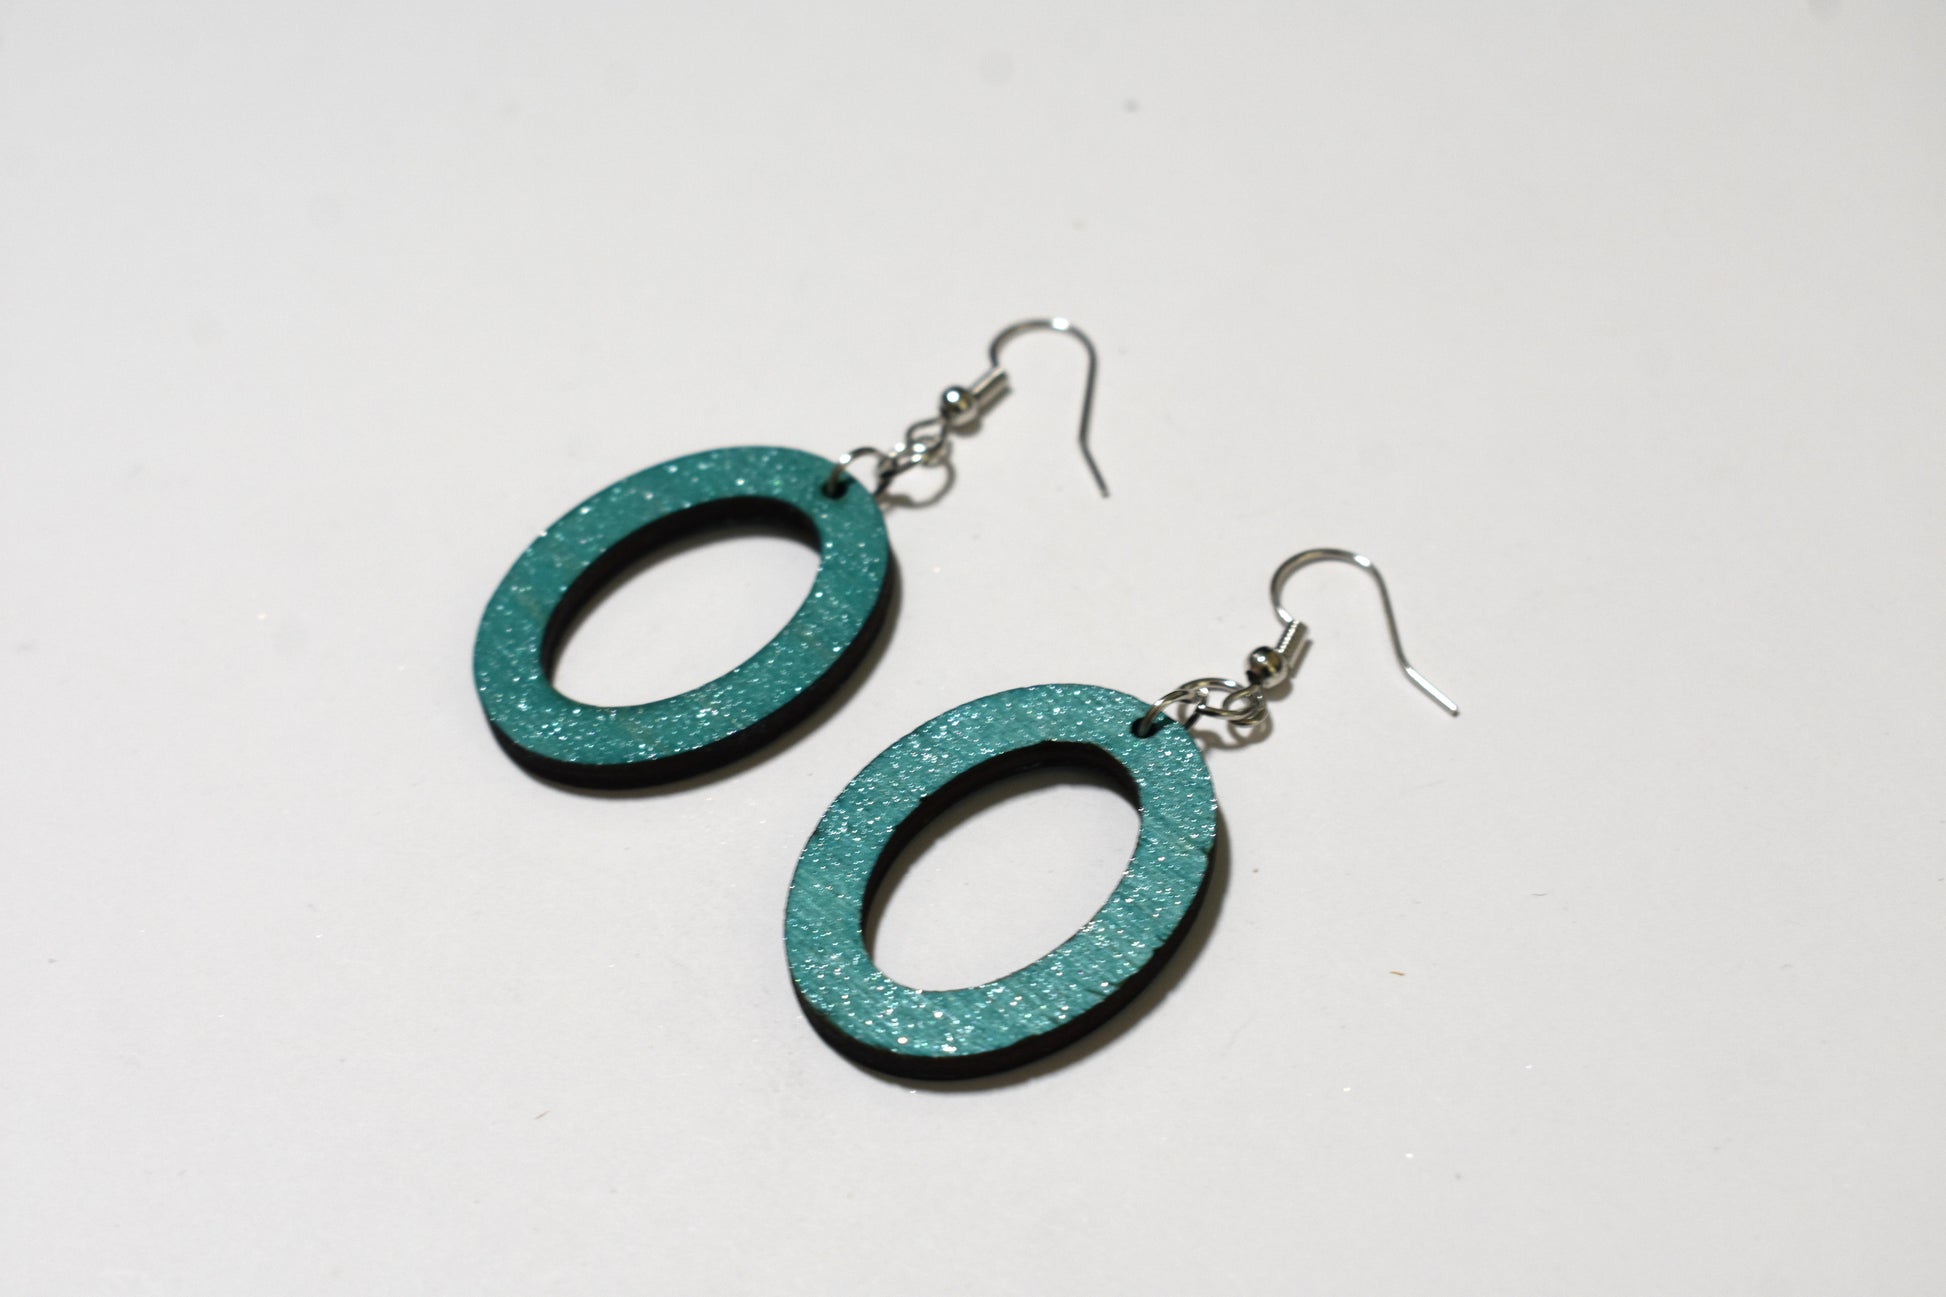 Teal oval earrings - Creative Designs By Kari